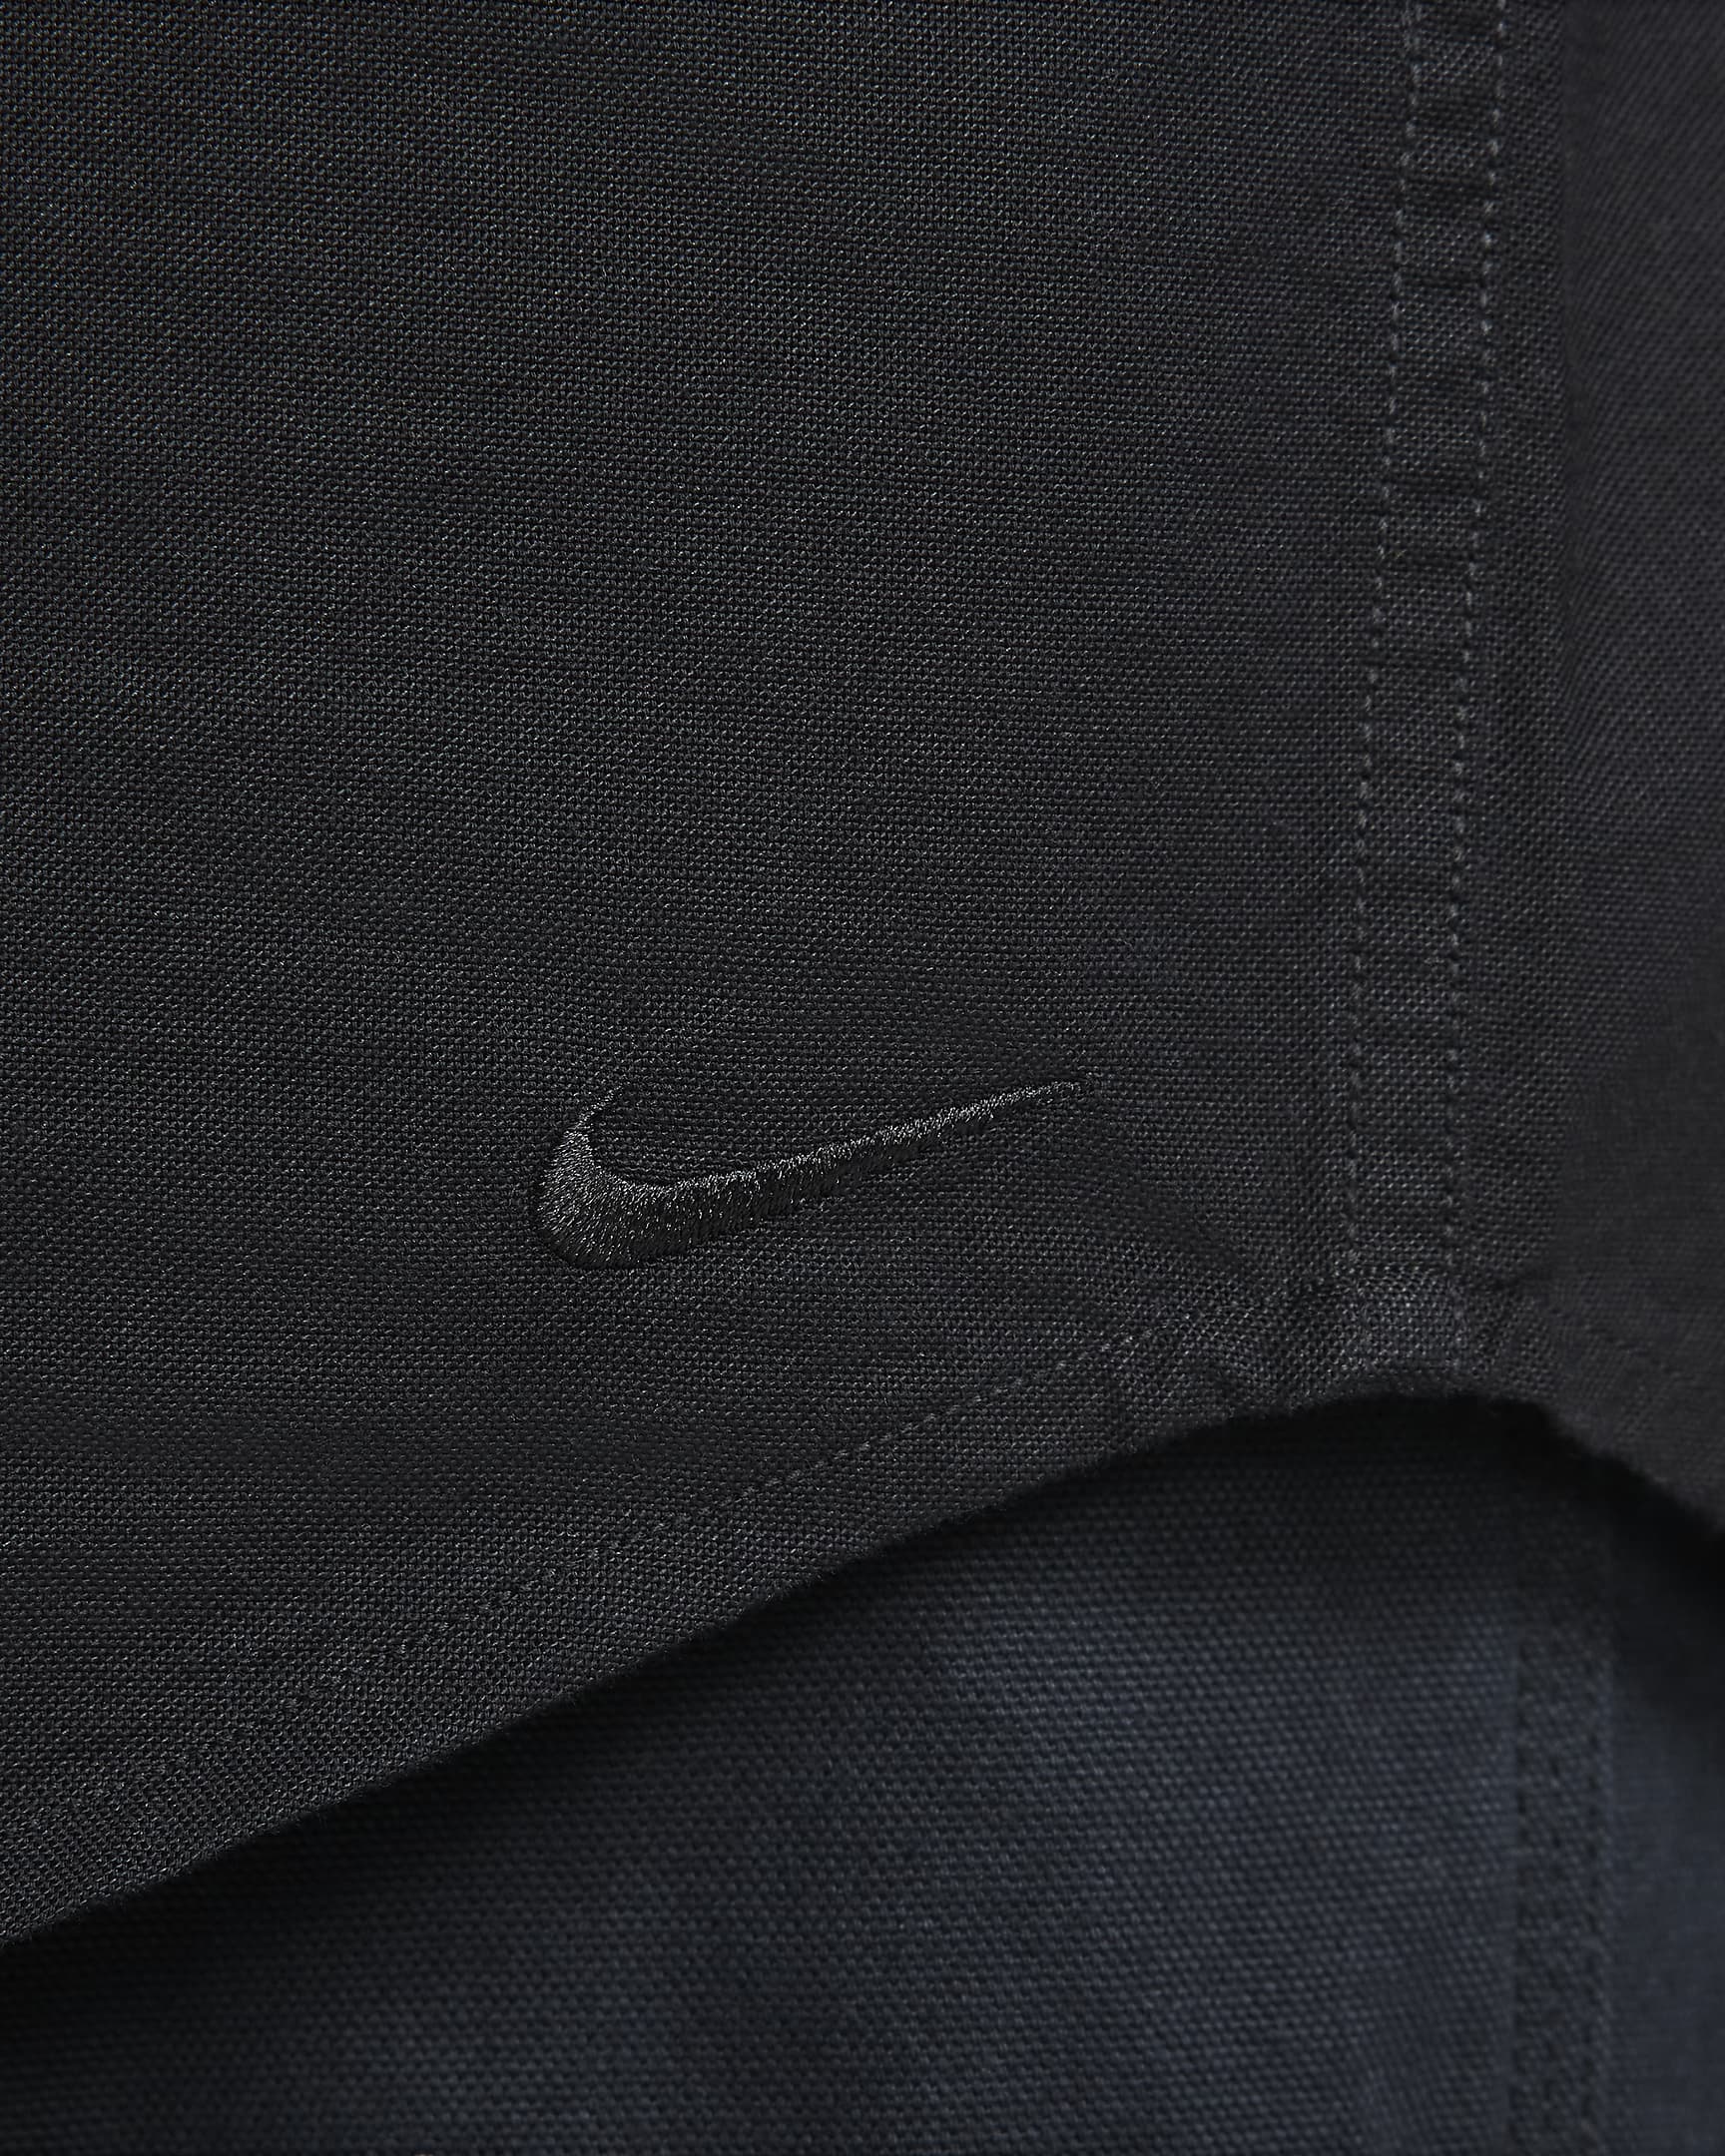 Nike Life Men's Long-Sleeve Oxford Button-Down Shirt. Nike UK